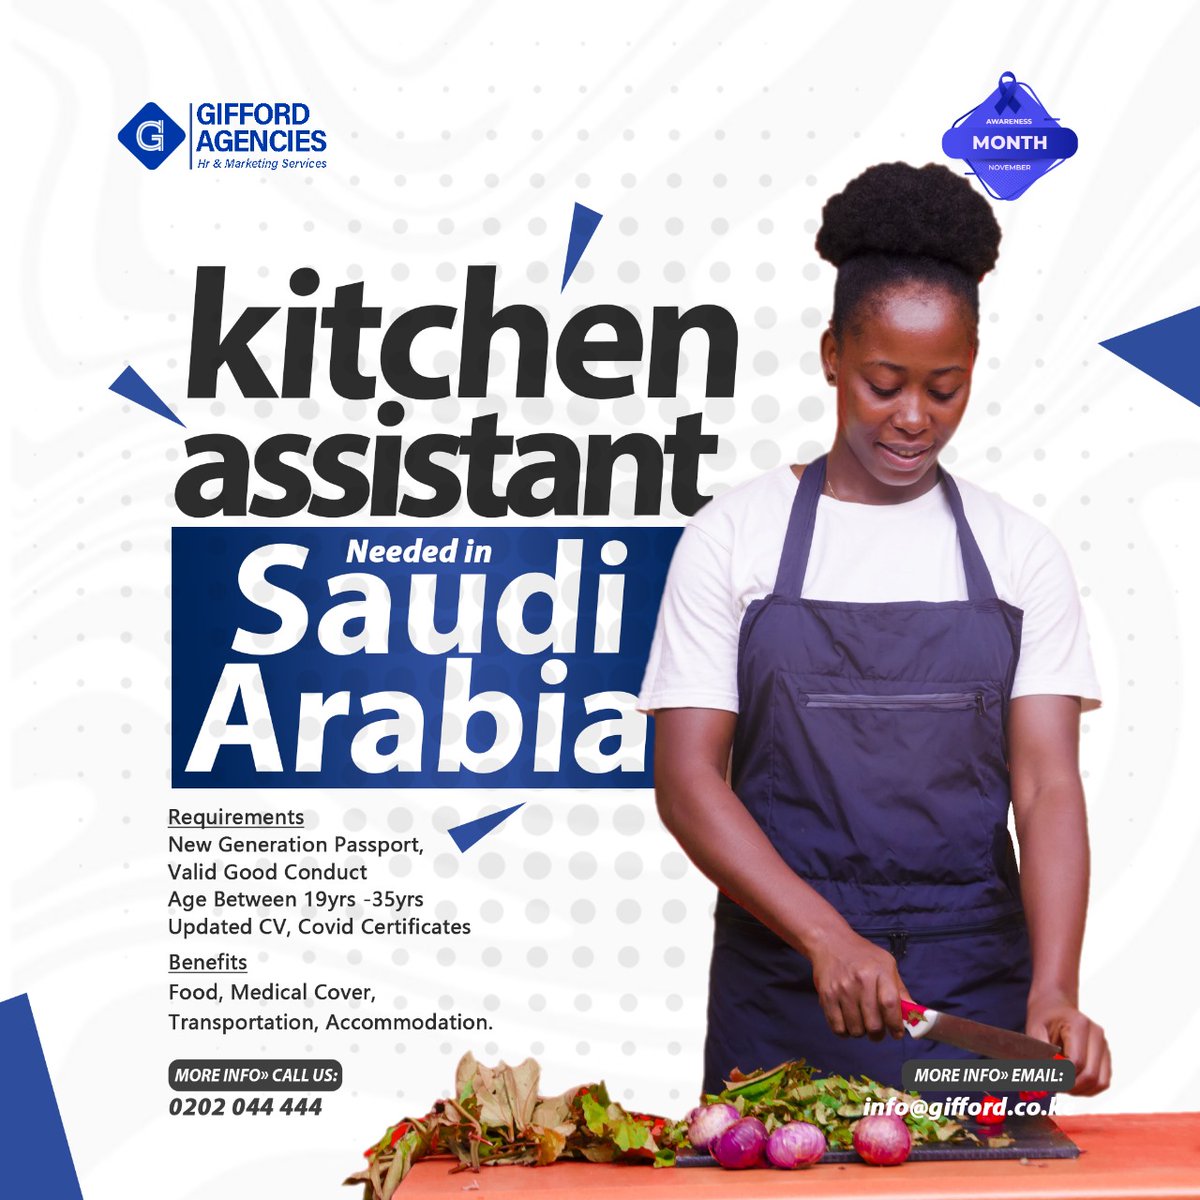 Kitchen Assistants Needed in Saudi Arabia!! #kitchenassistants #saudiarabia #workinsaudiarabia #jobvacancy #novemberopportunities #giffordagencies #trendingnow #goviral #eldoret #kenya